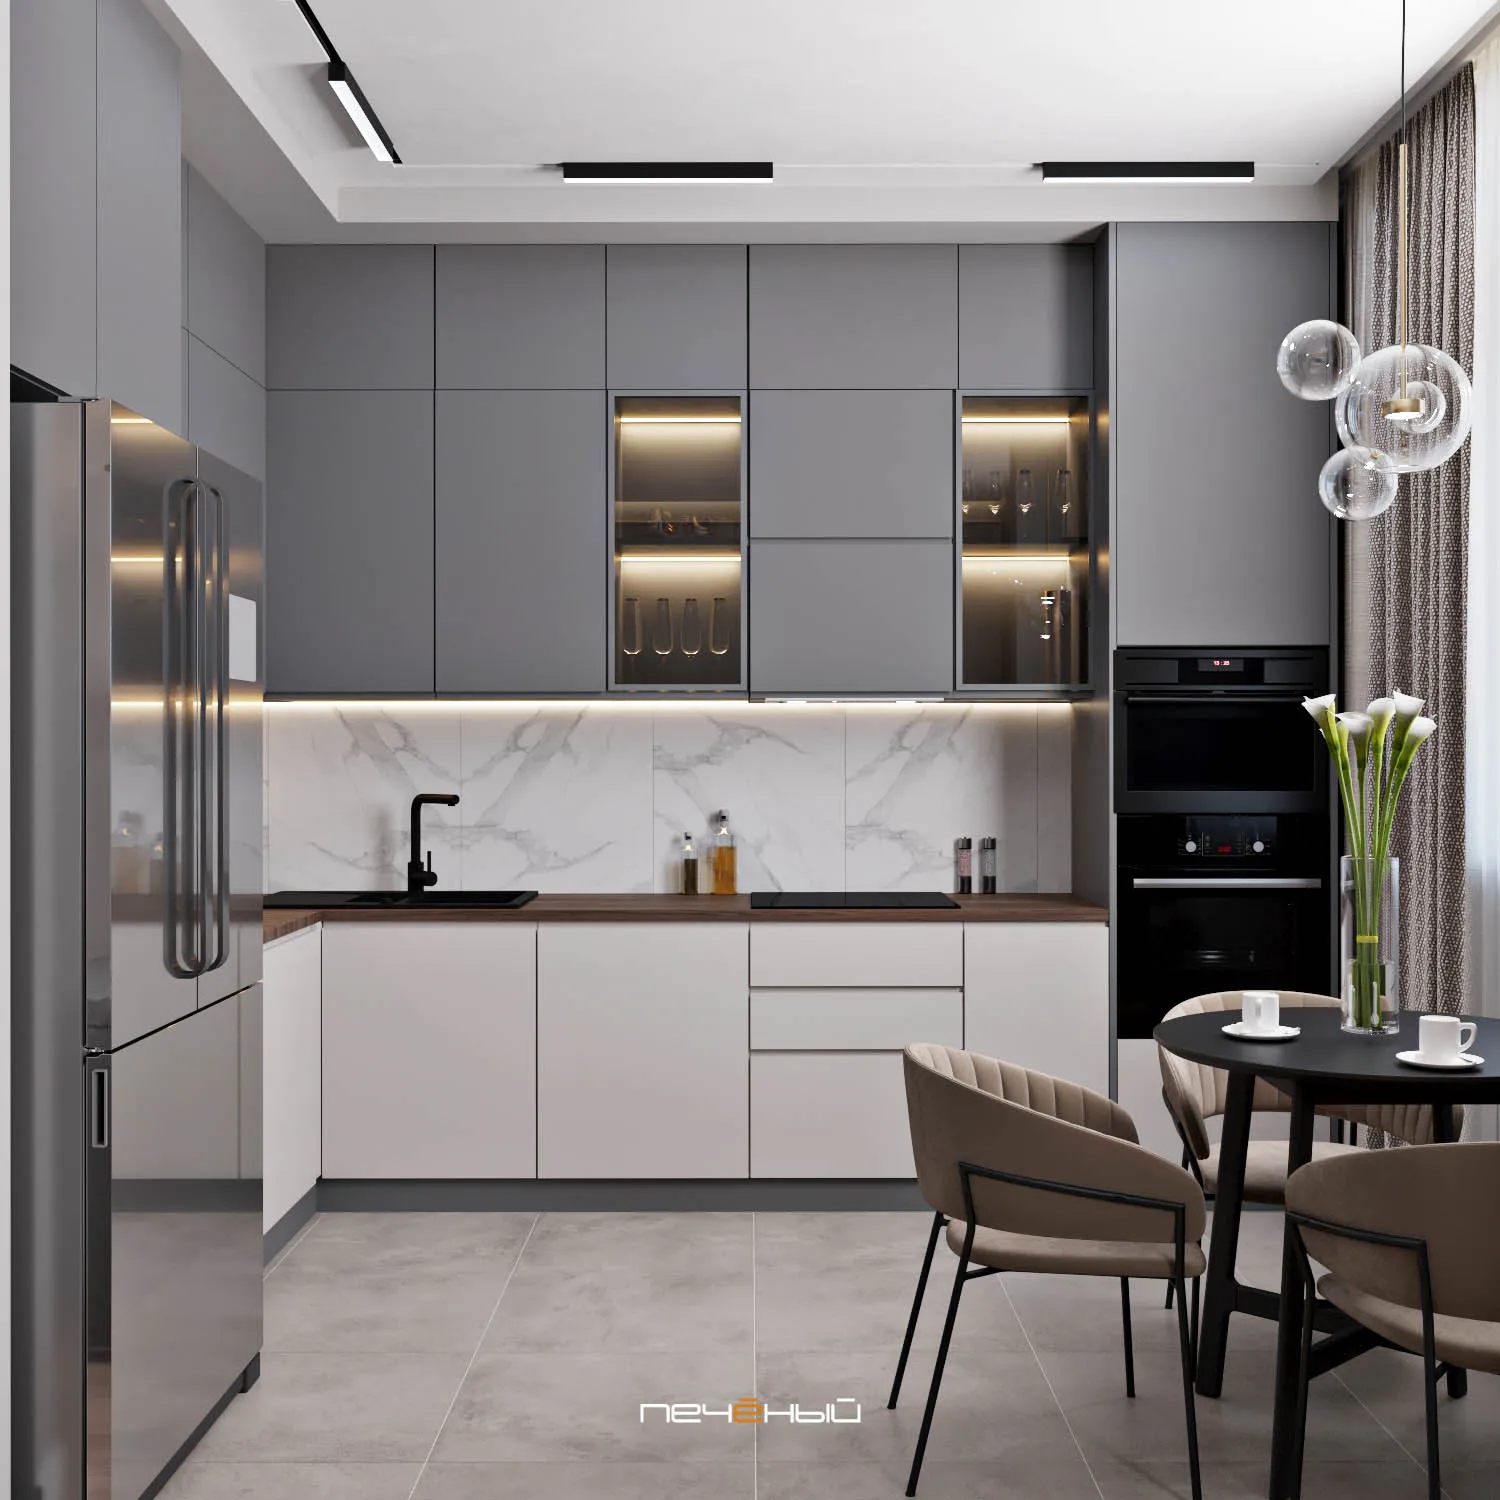 Кухня 11 кв. м. — идеи дизайна, планировки, стиля, советы как рационально использовать пространство